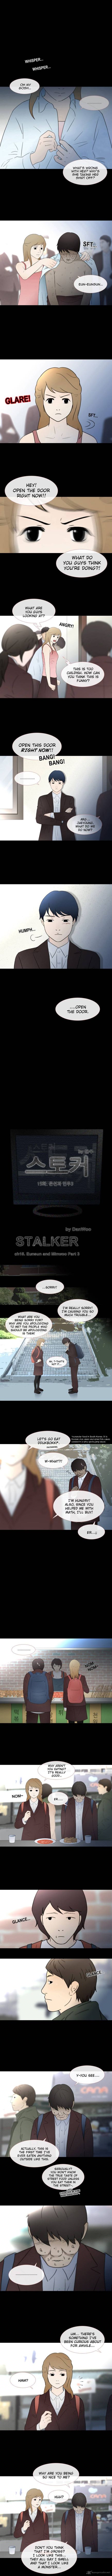 stalker_15_1